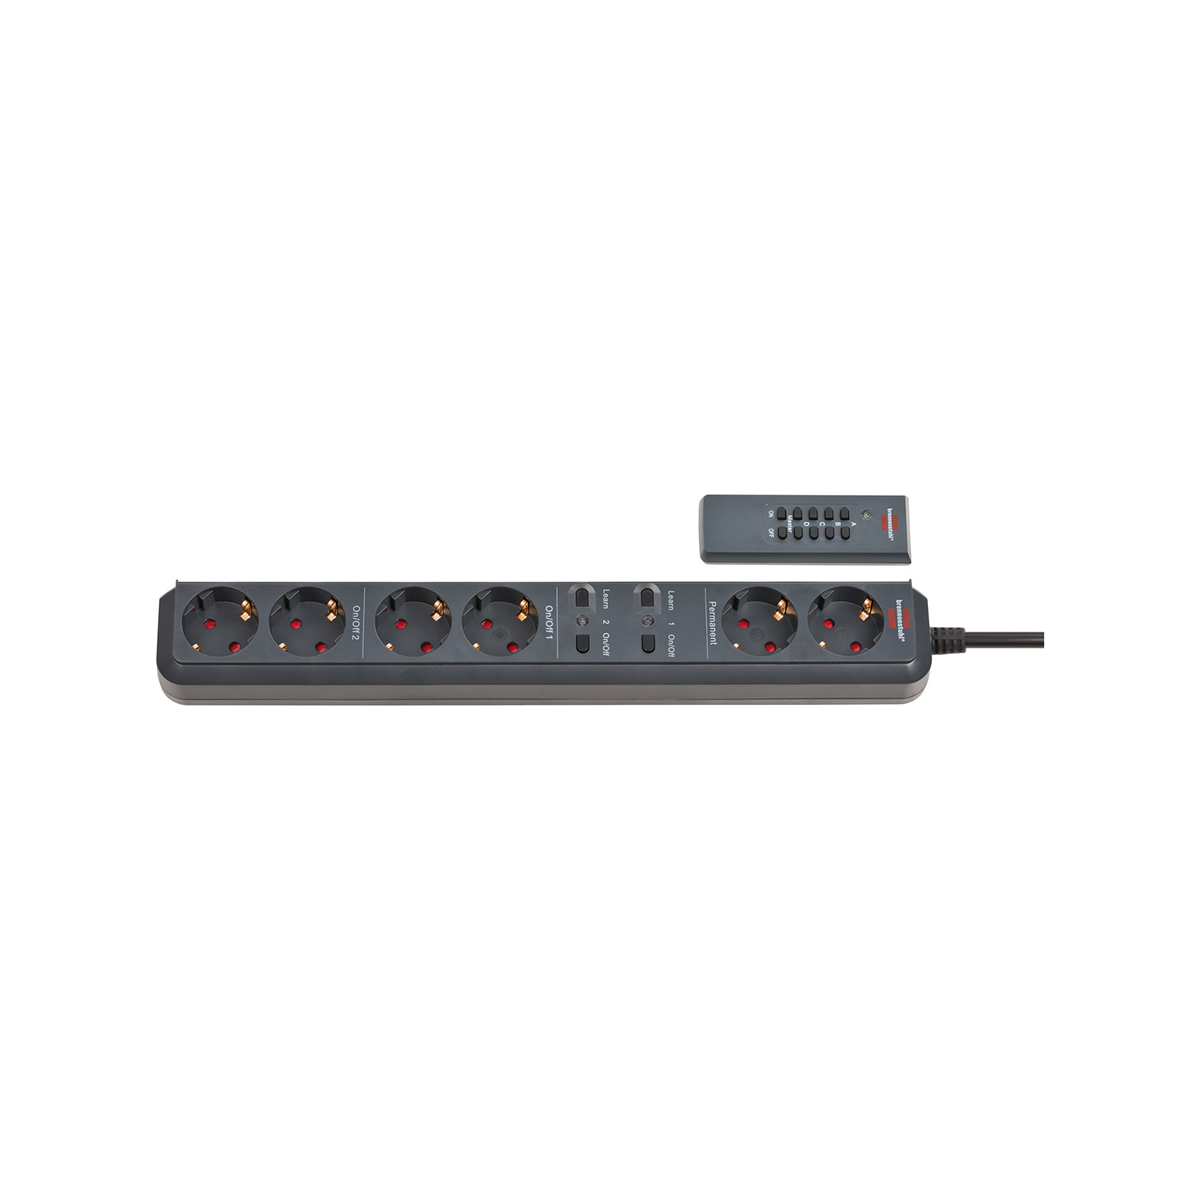 Сетевой фильтр Brennenstuhl Eco-Line с дистанционным управлением 6 розеток кабель 1,5 м H05VV-F 3G1,5 черный картонная упаковка 1159760636